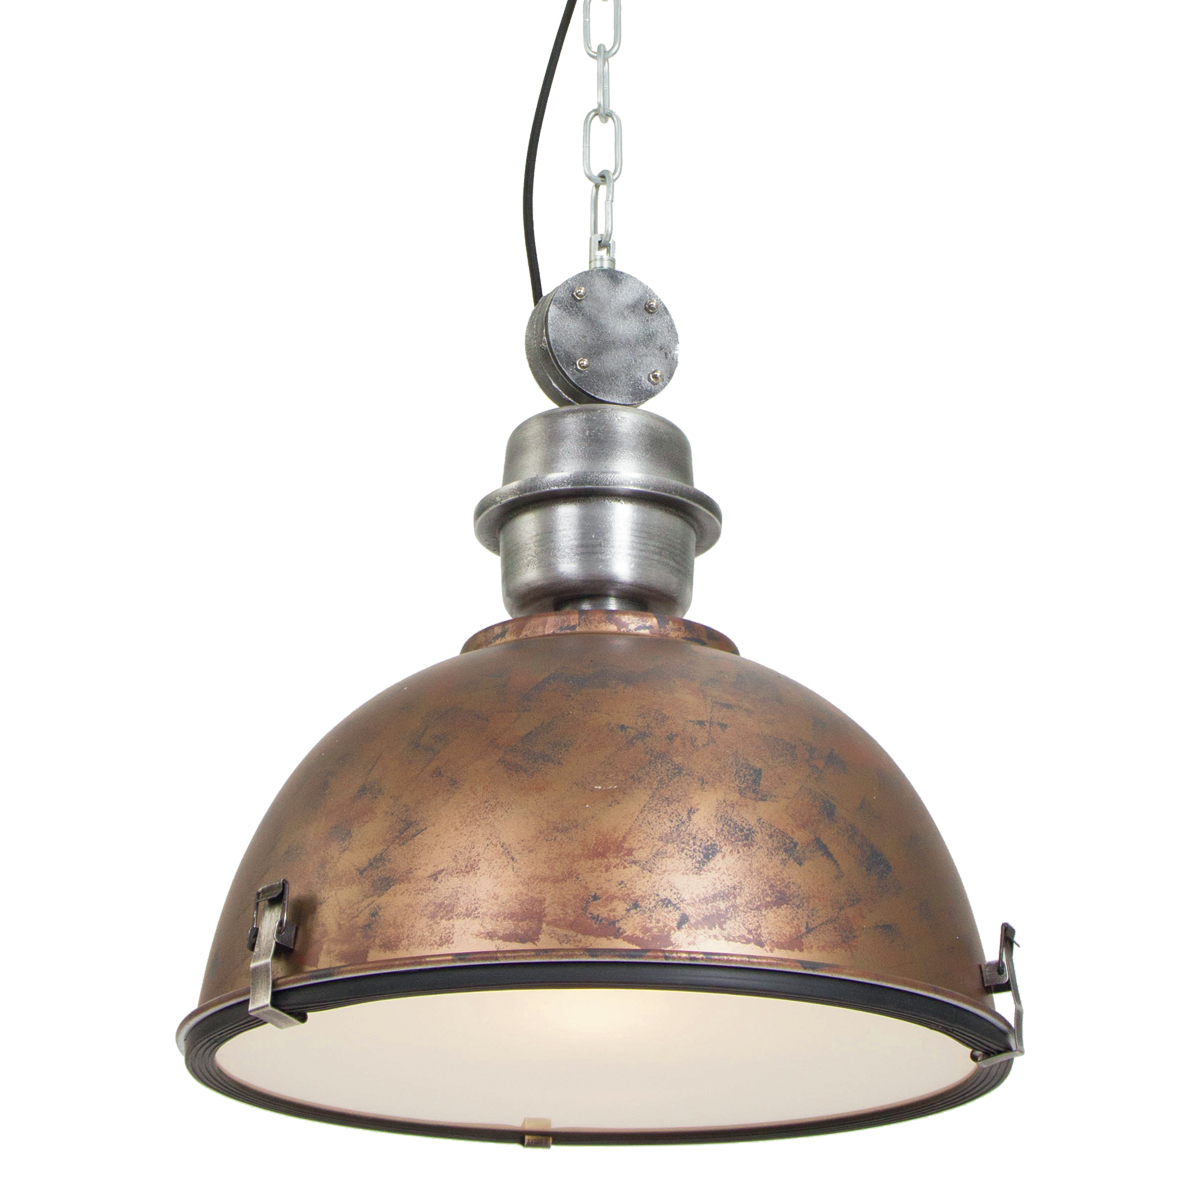 duisternis is genoeg vergeten Hanglamp industrieel Core oud bruin Ø42cm | Industriele lampen online